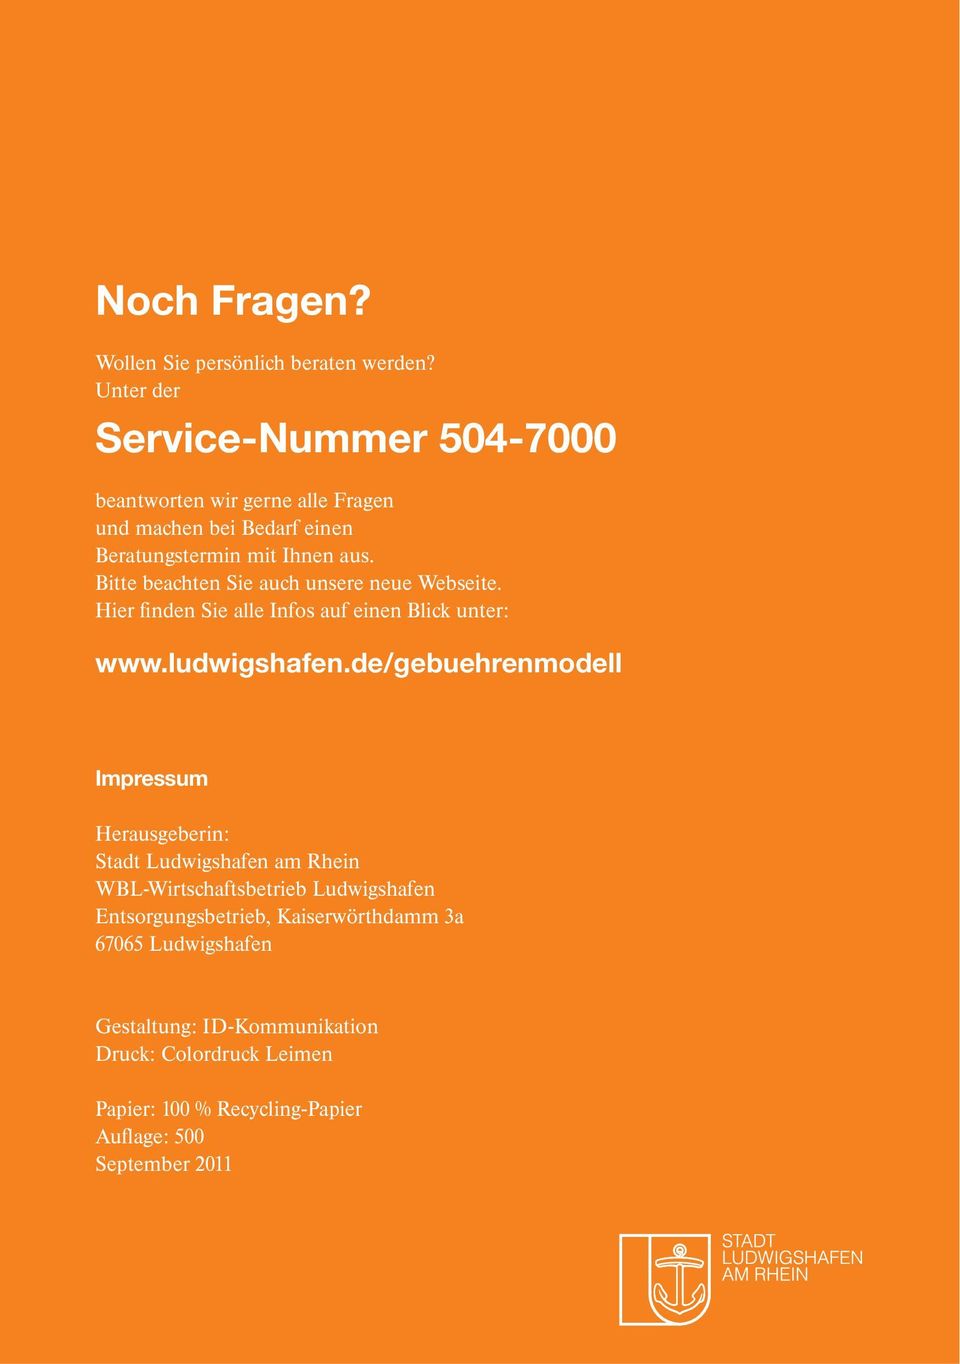 Bitte beachten Sie auch unsere neue Webseite. Hier finden Sie alle Infos auf einen Blick unter: www.ludwigshafen.